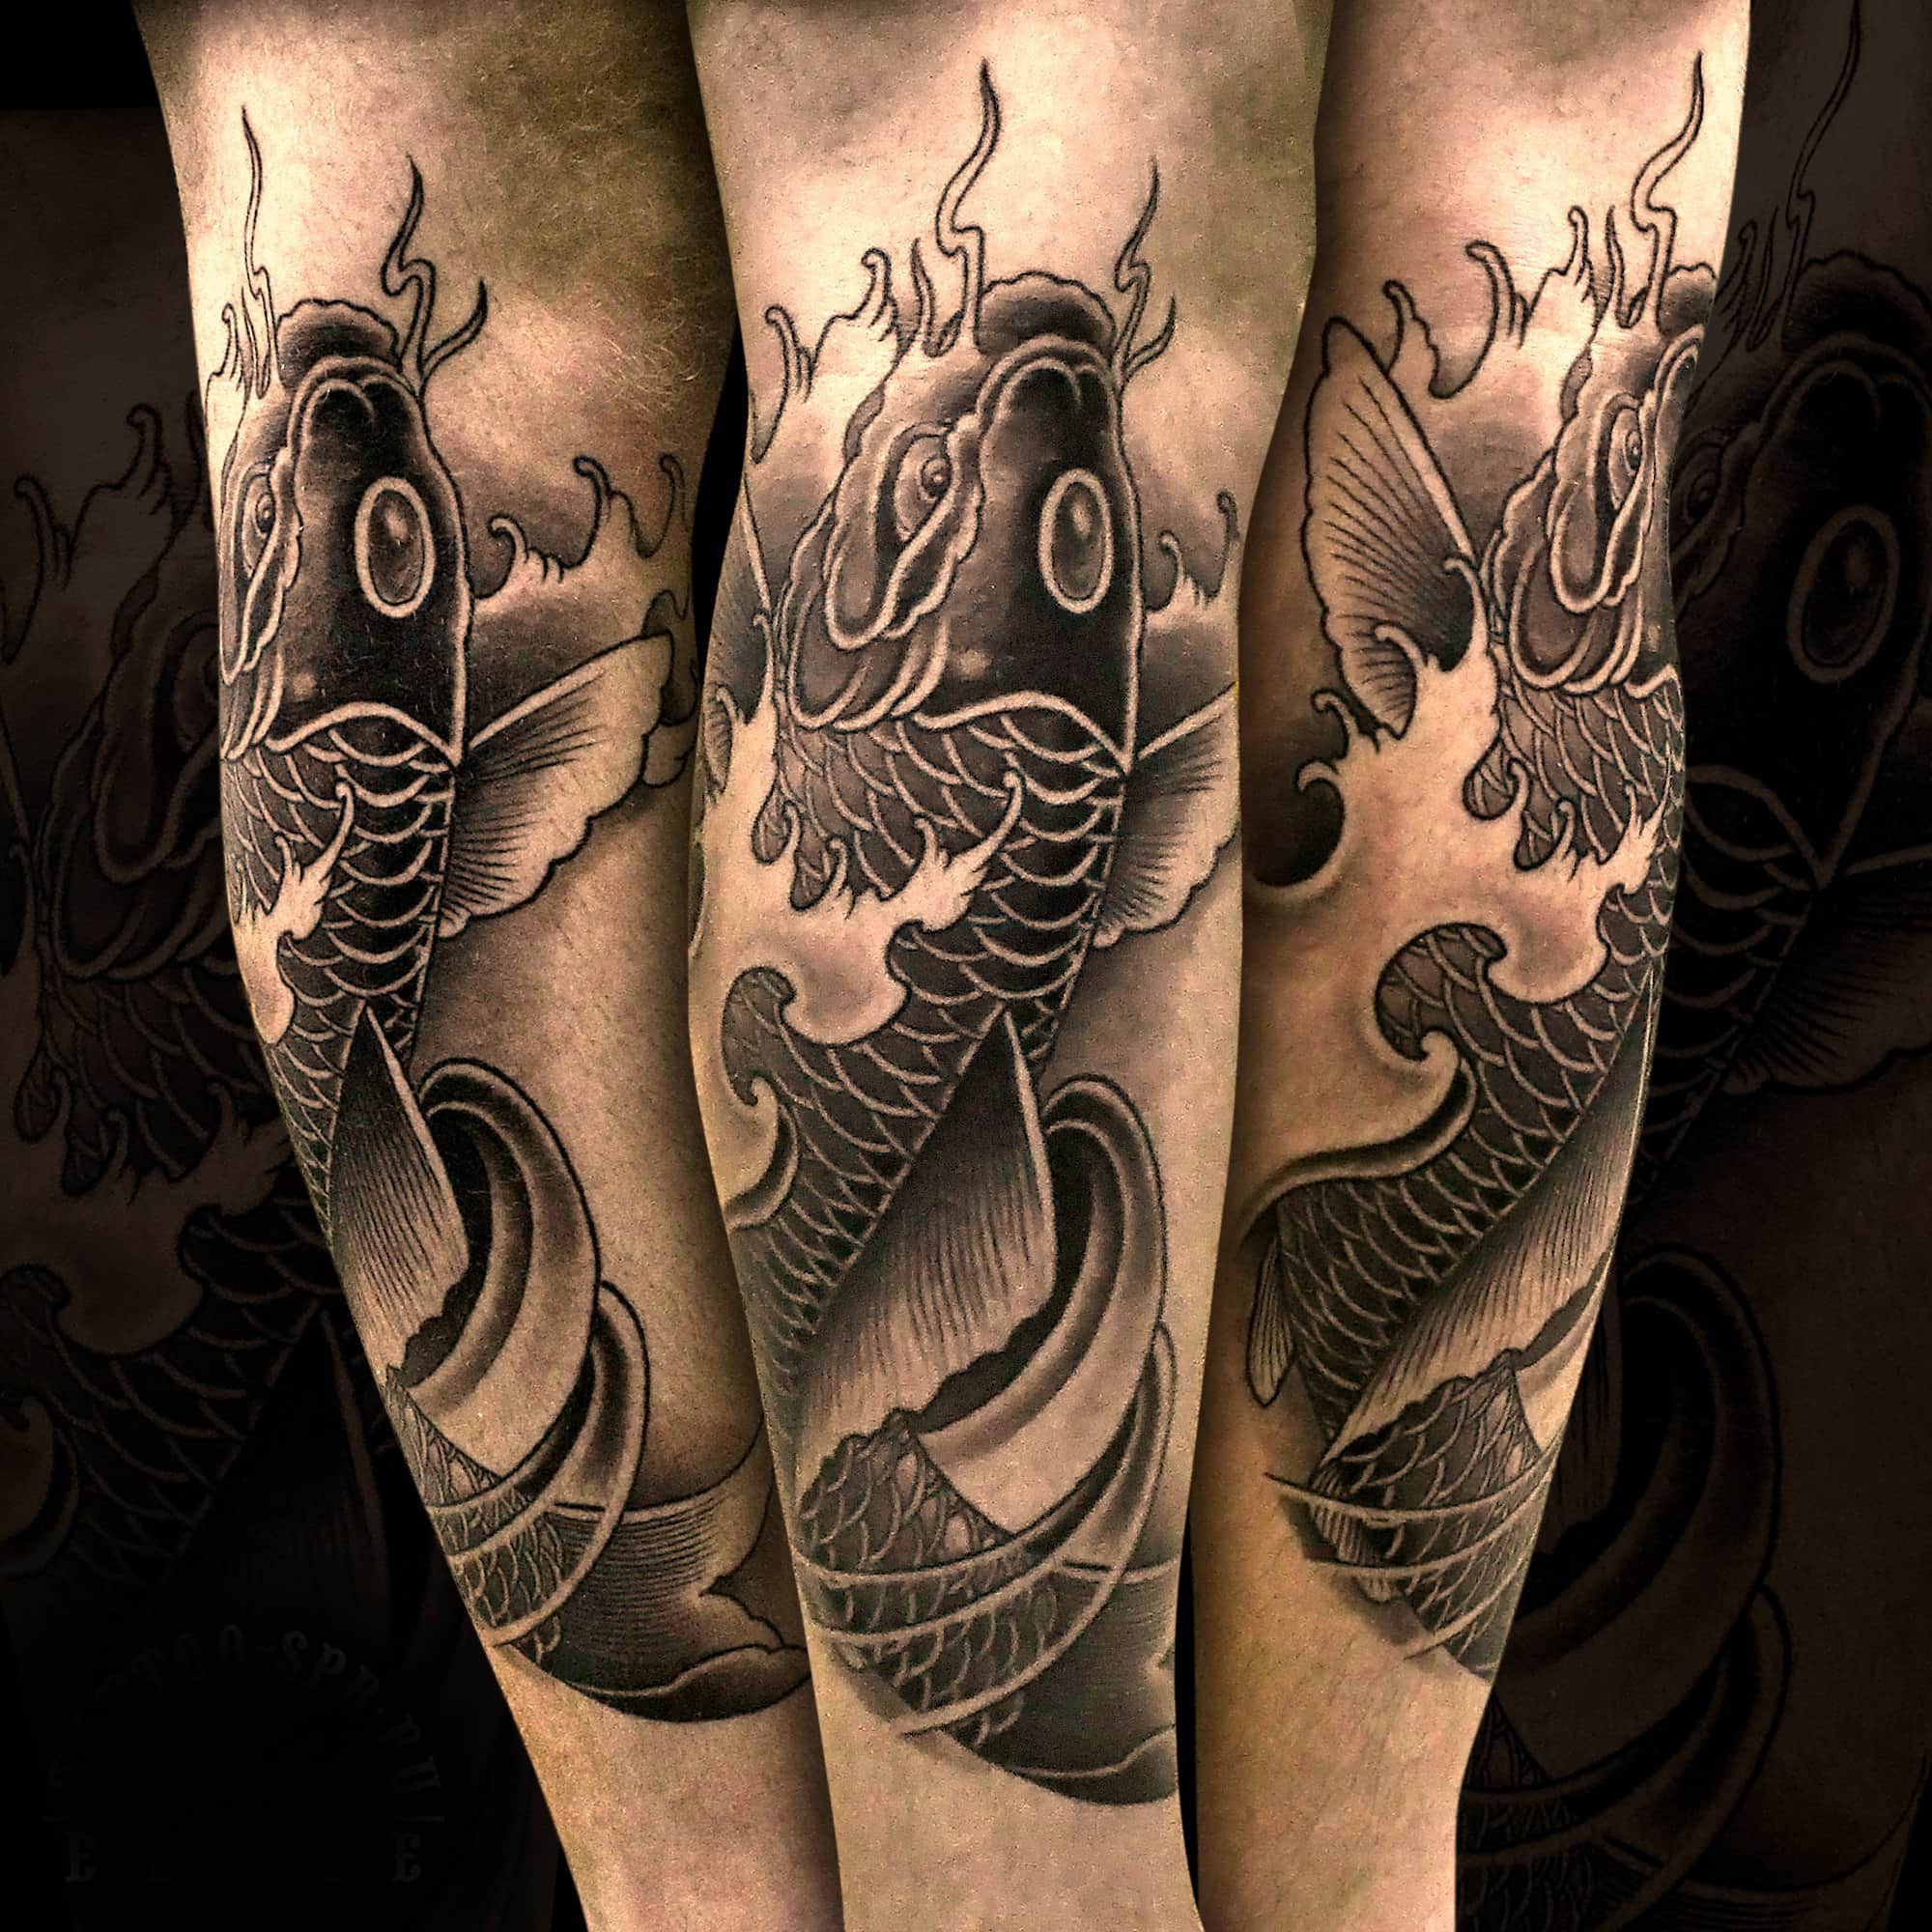 Что означает татуировка с изображением акулы?